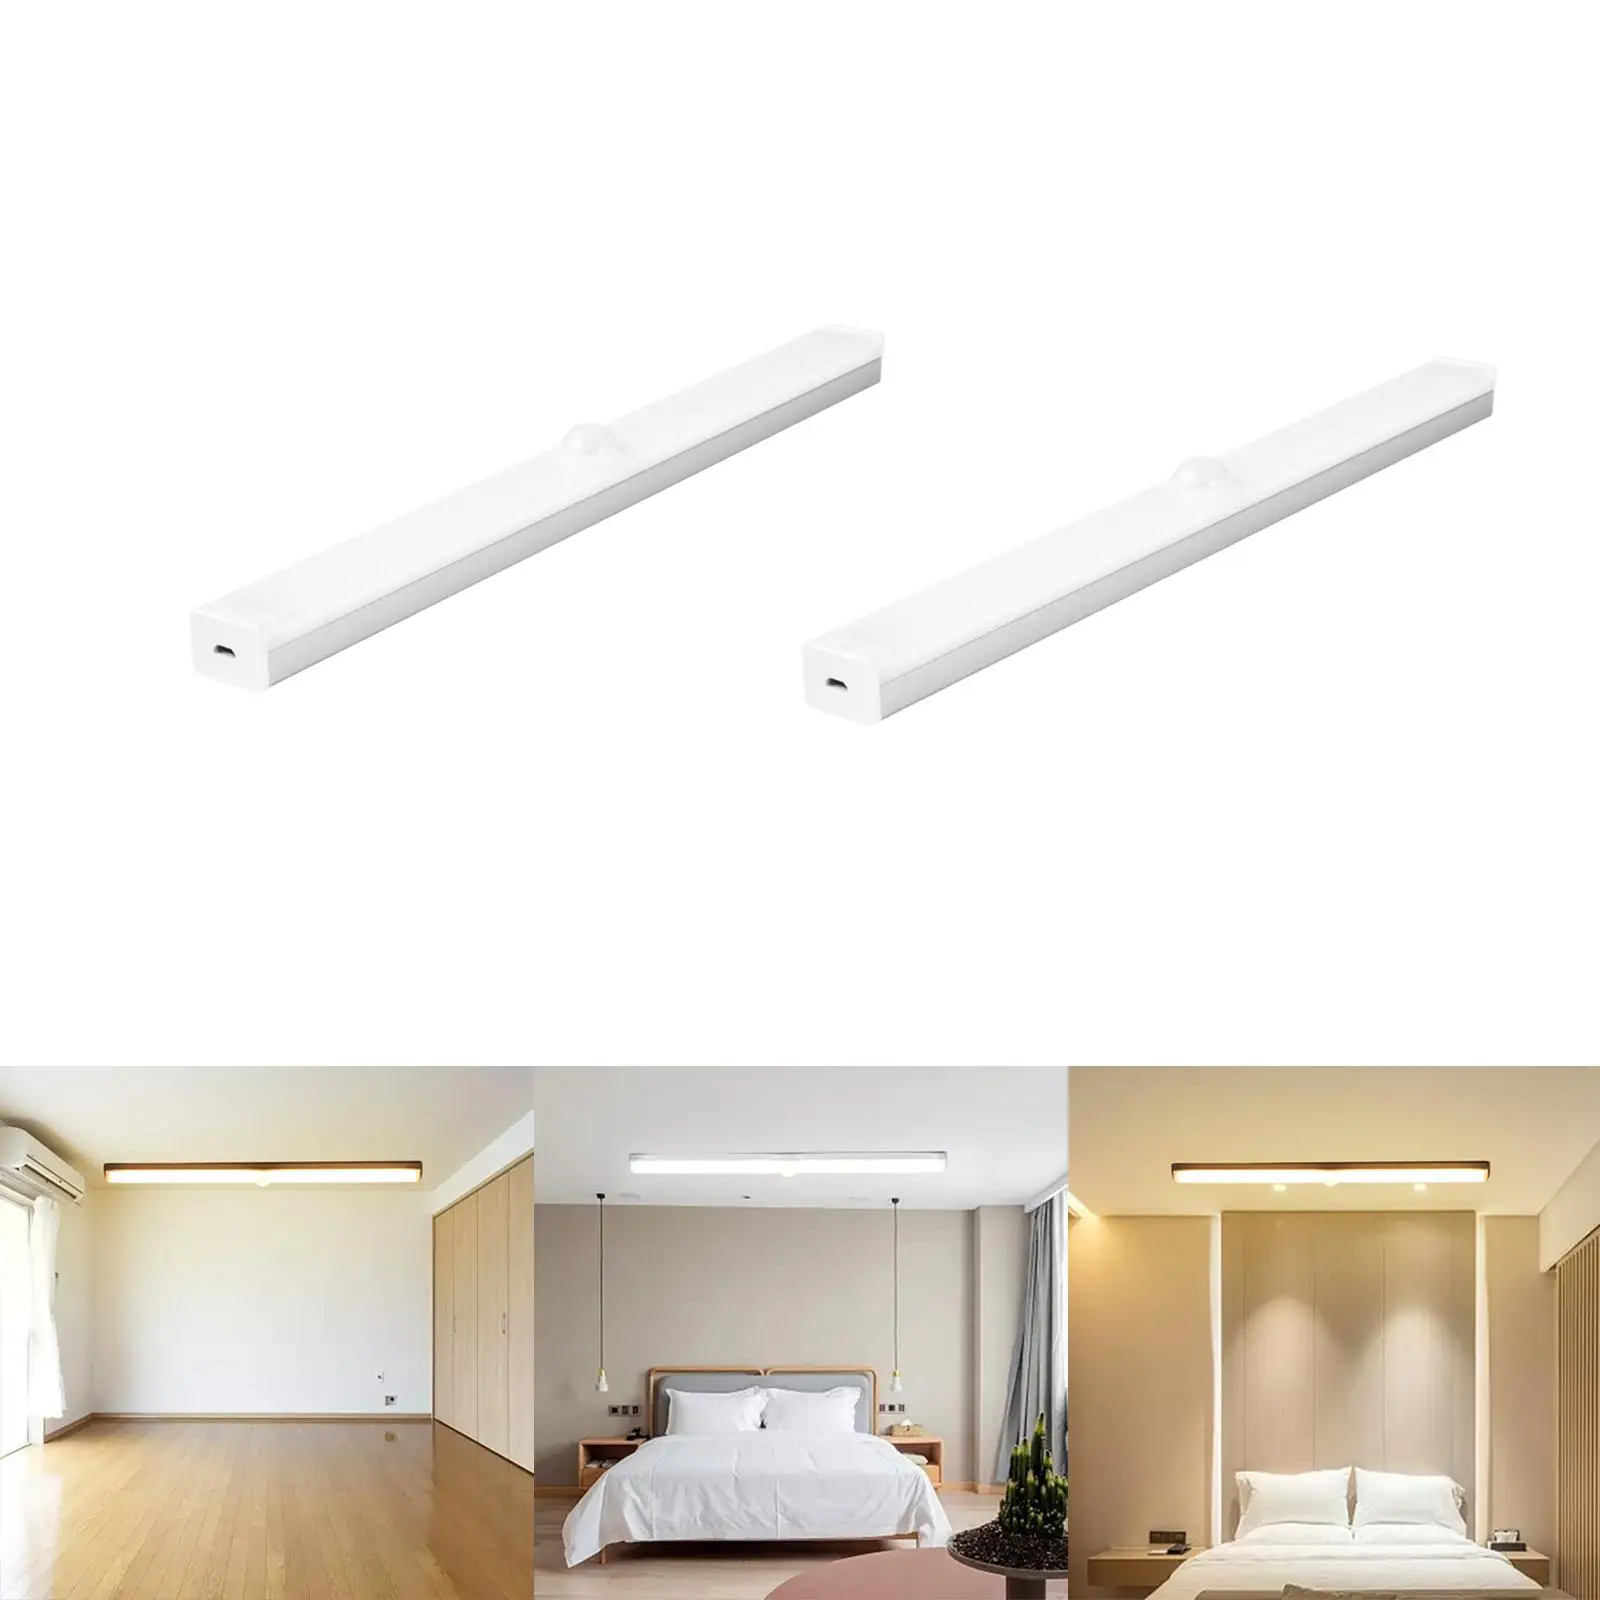 LED Under Cabinet Home Lighting Shelf Bedroom Dimmable Body Sensor Lights Lights Strip Bar for Vanity Dining Room Wardrobe Desk